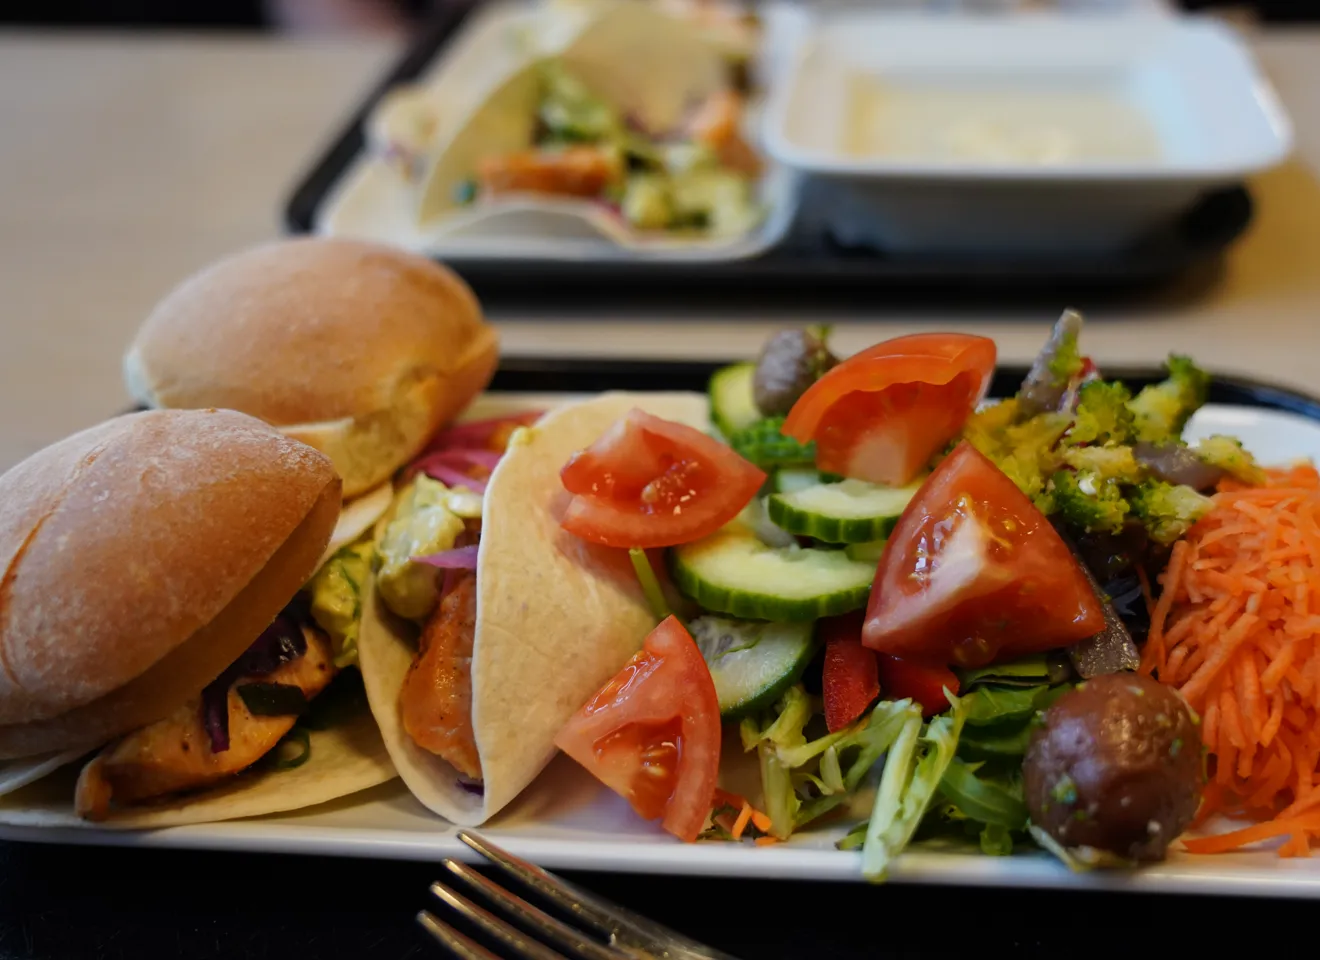 Nærbilde av frokost eller lunsj på et brett i en kantine med salat og rundstykker